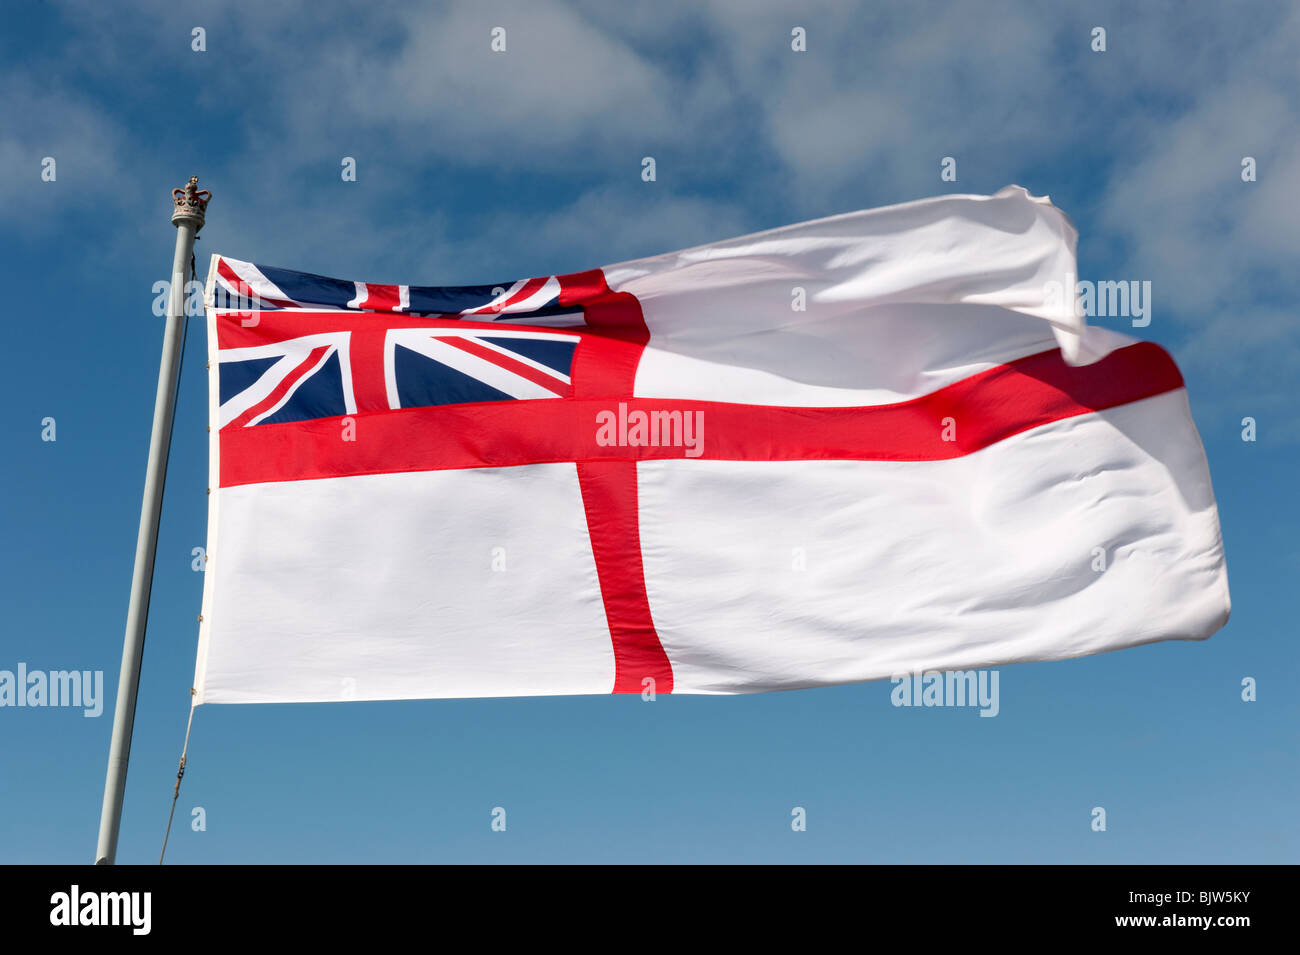 Royal navy flag immagini e fotografie stock ad alta risoluzione - Alamy